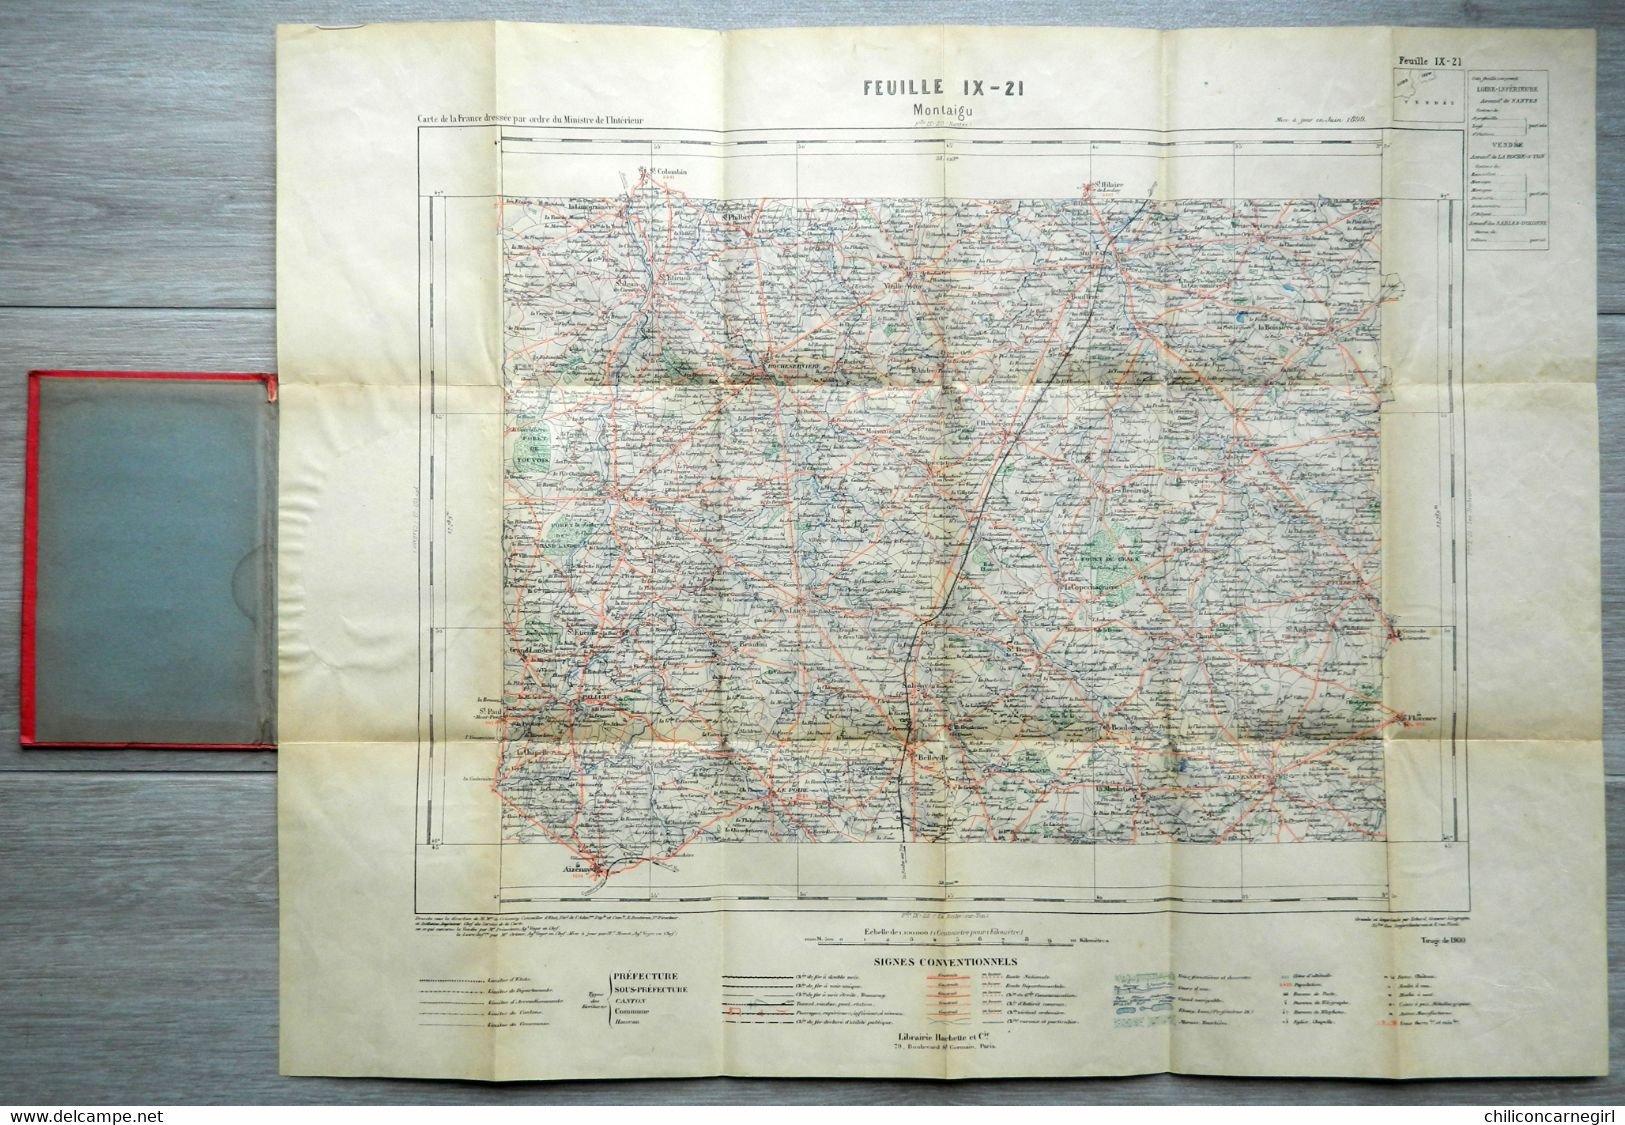 Carte Ministère De L'Intérieur - Echelle 1 : 100 000 - MONTAIGU - Librairie Hachette - Tirage De 1900 - Feuille IX - 21 - Topographical Maps